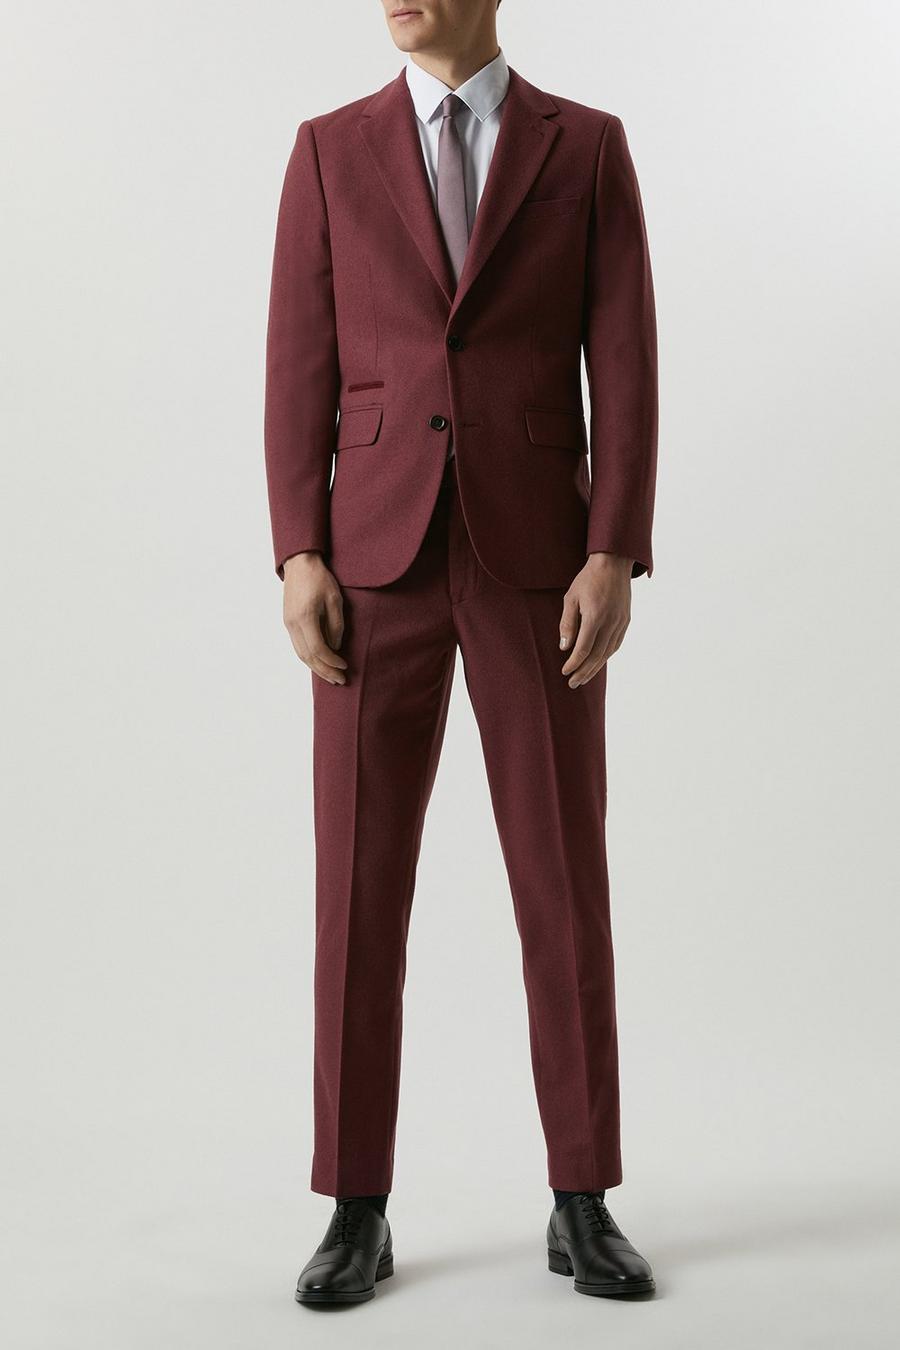 Slim Fit Burgundy Tweed Three-Piece Suit